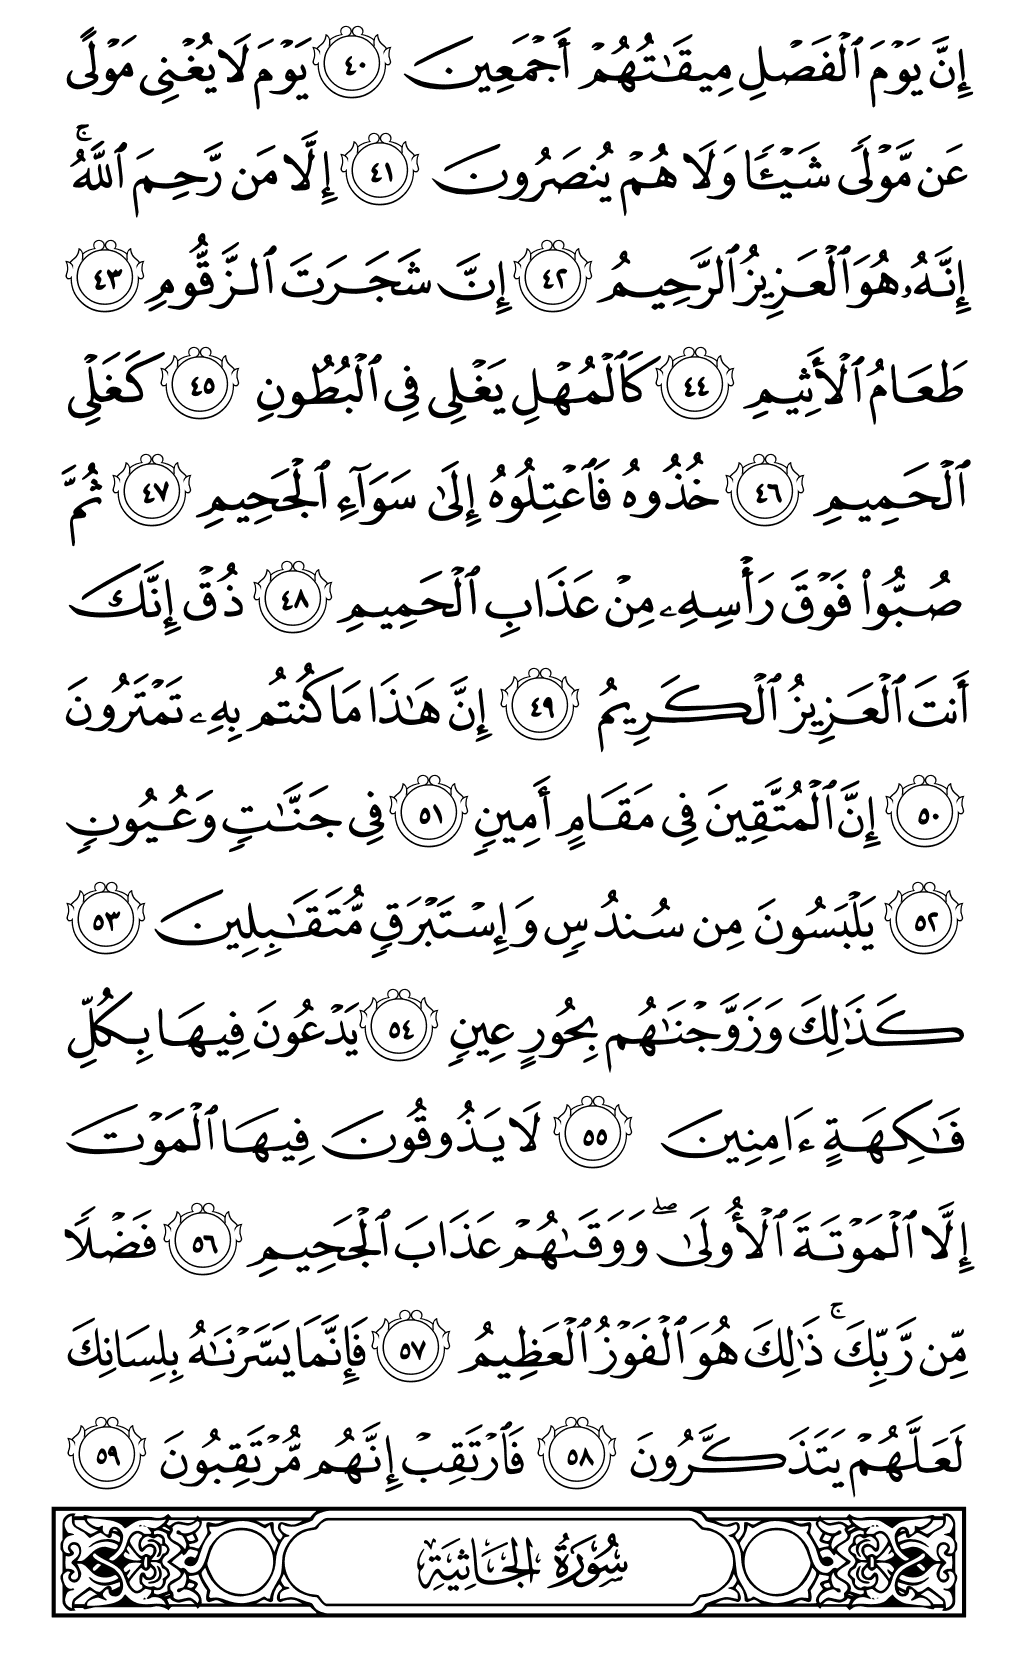 الصفحة رقم 498 من القرآن الكريم